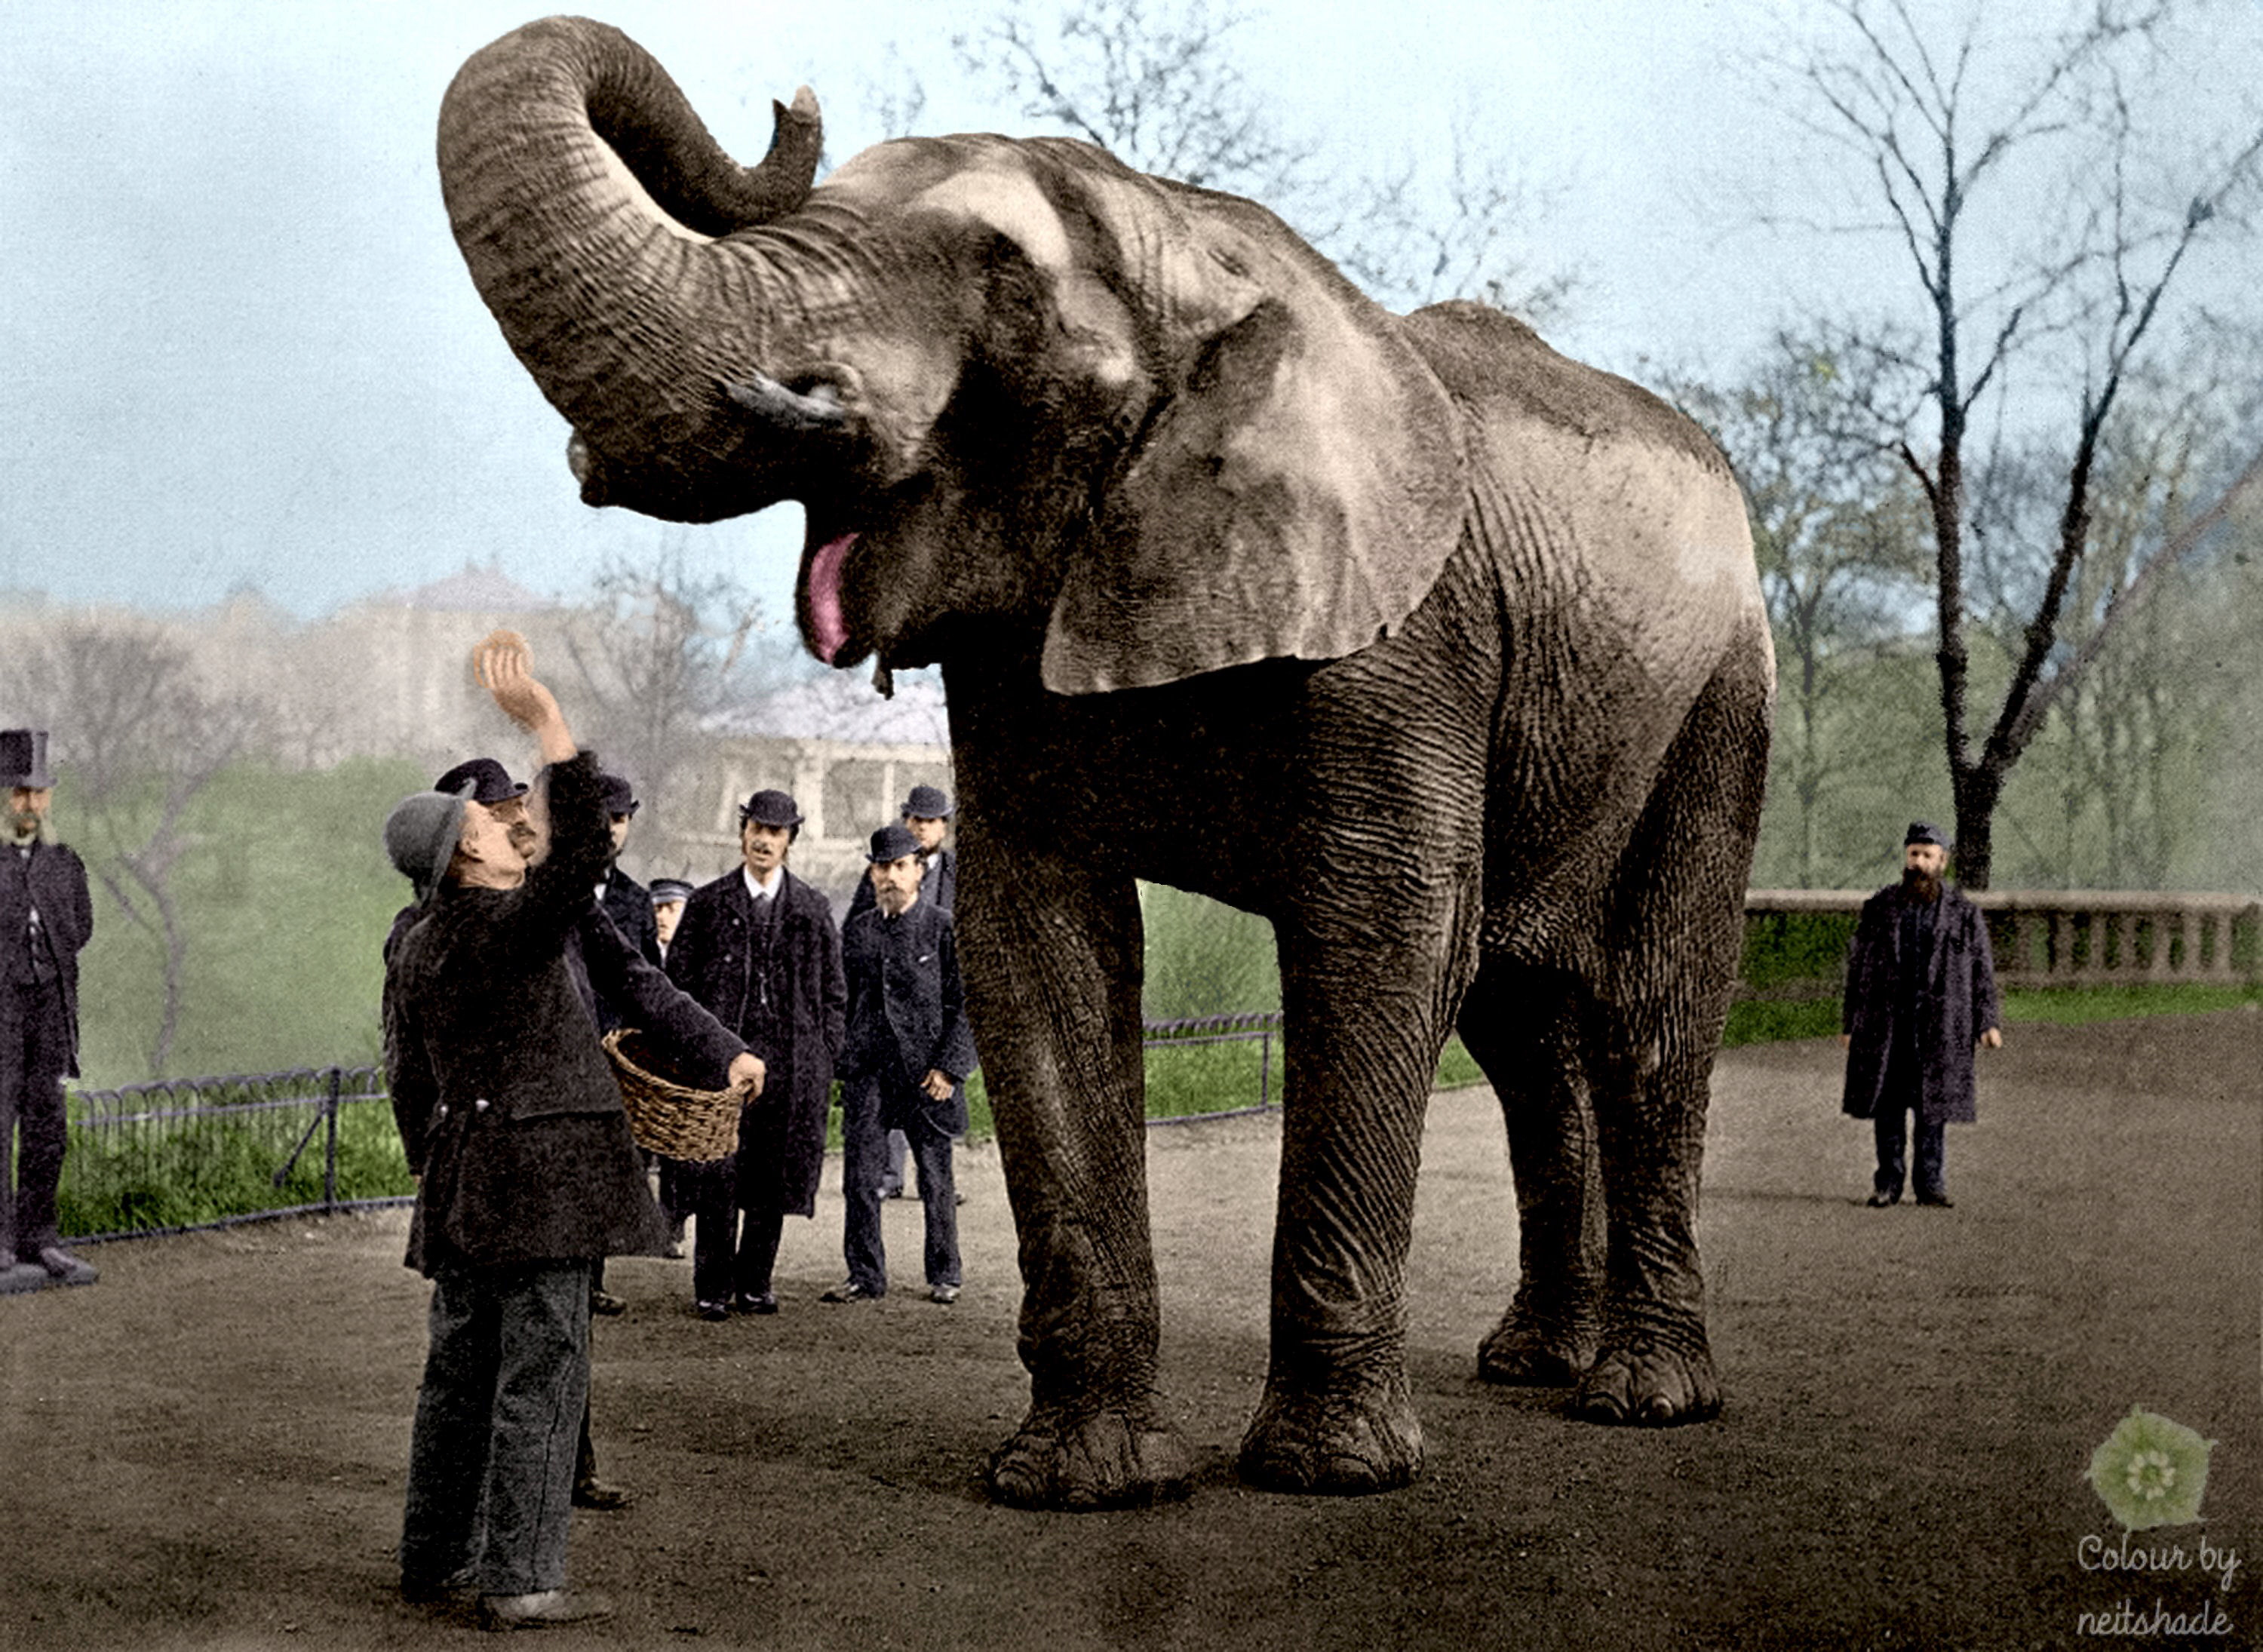 Jumbo the Elephant.